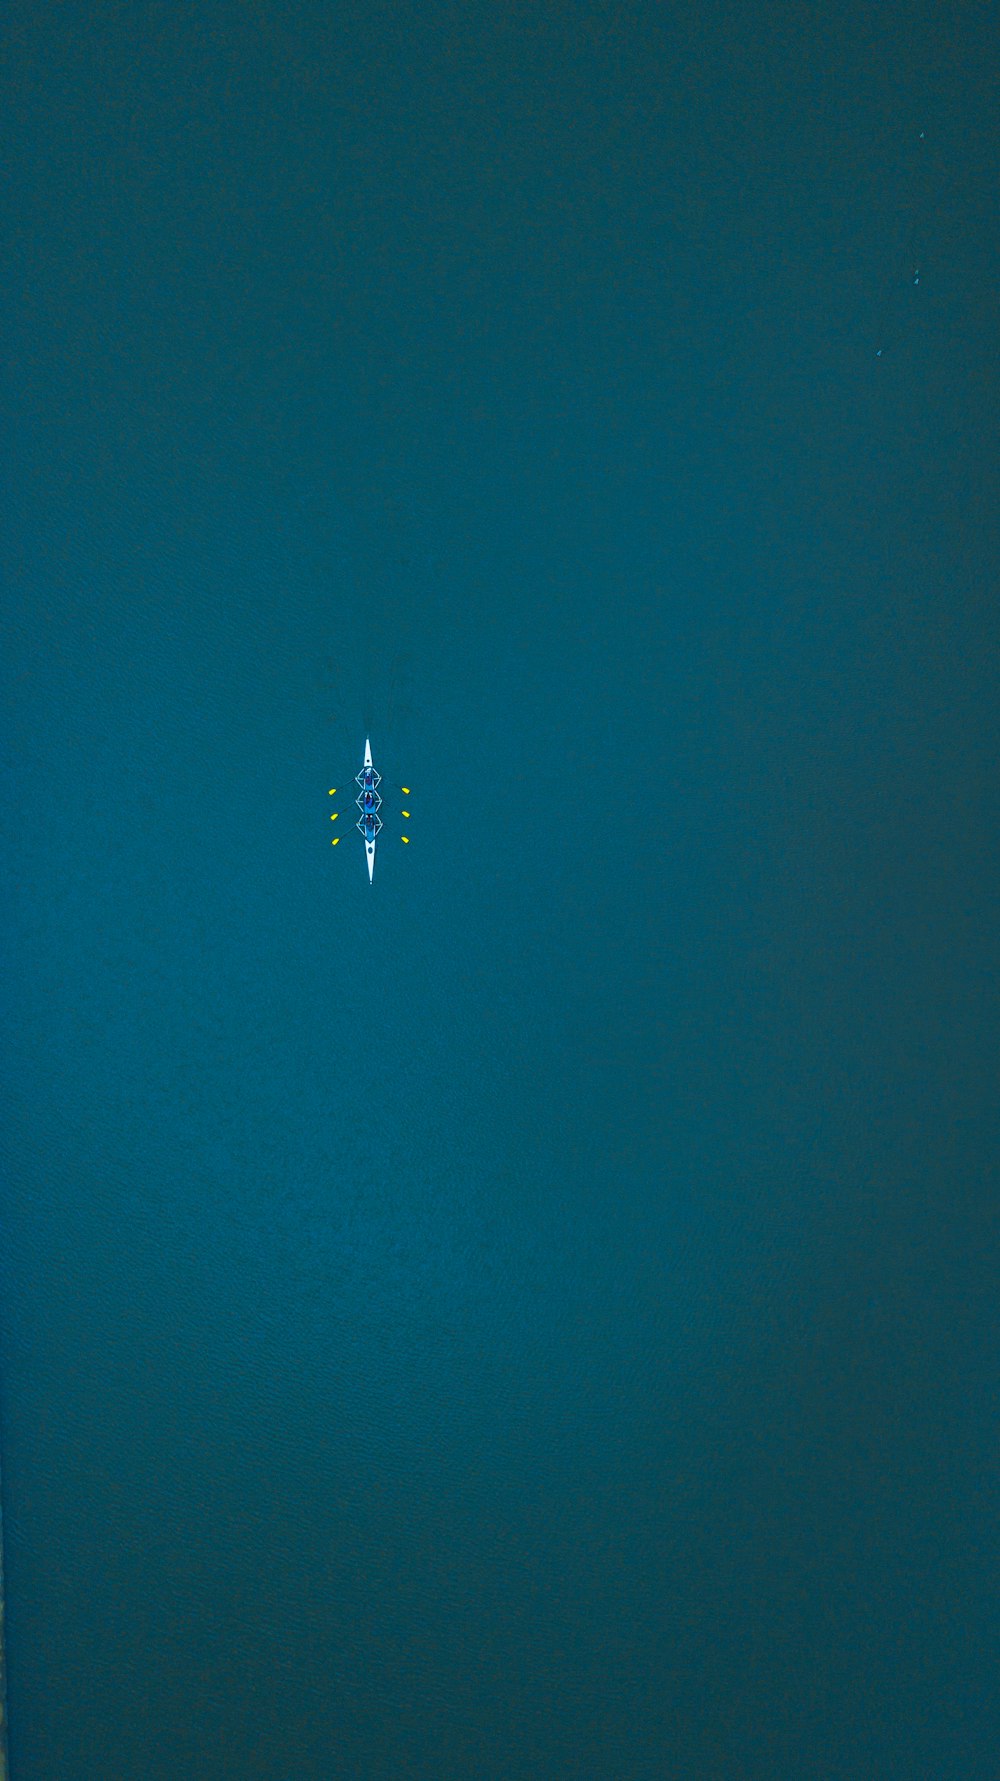 uma vista aérea de uma pessoa em uma prancha de surf no oceano